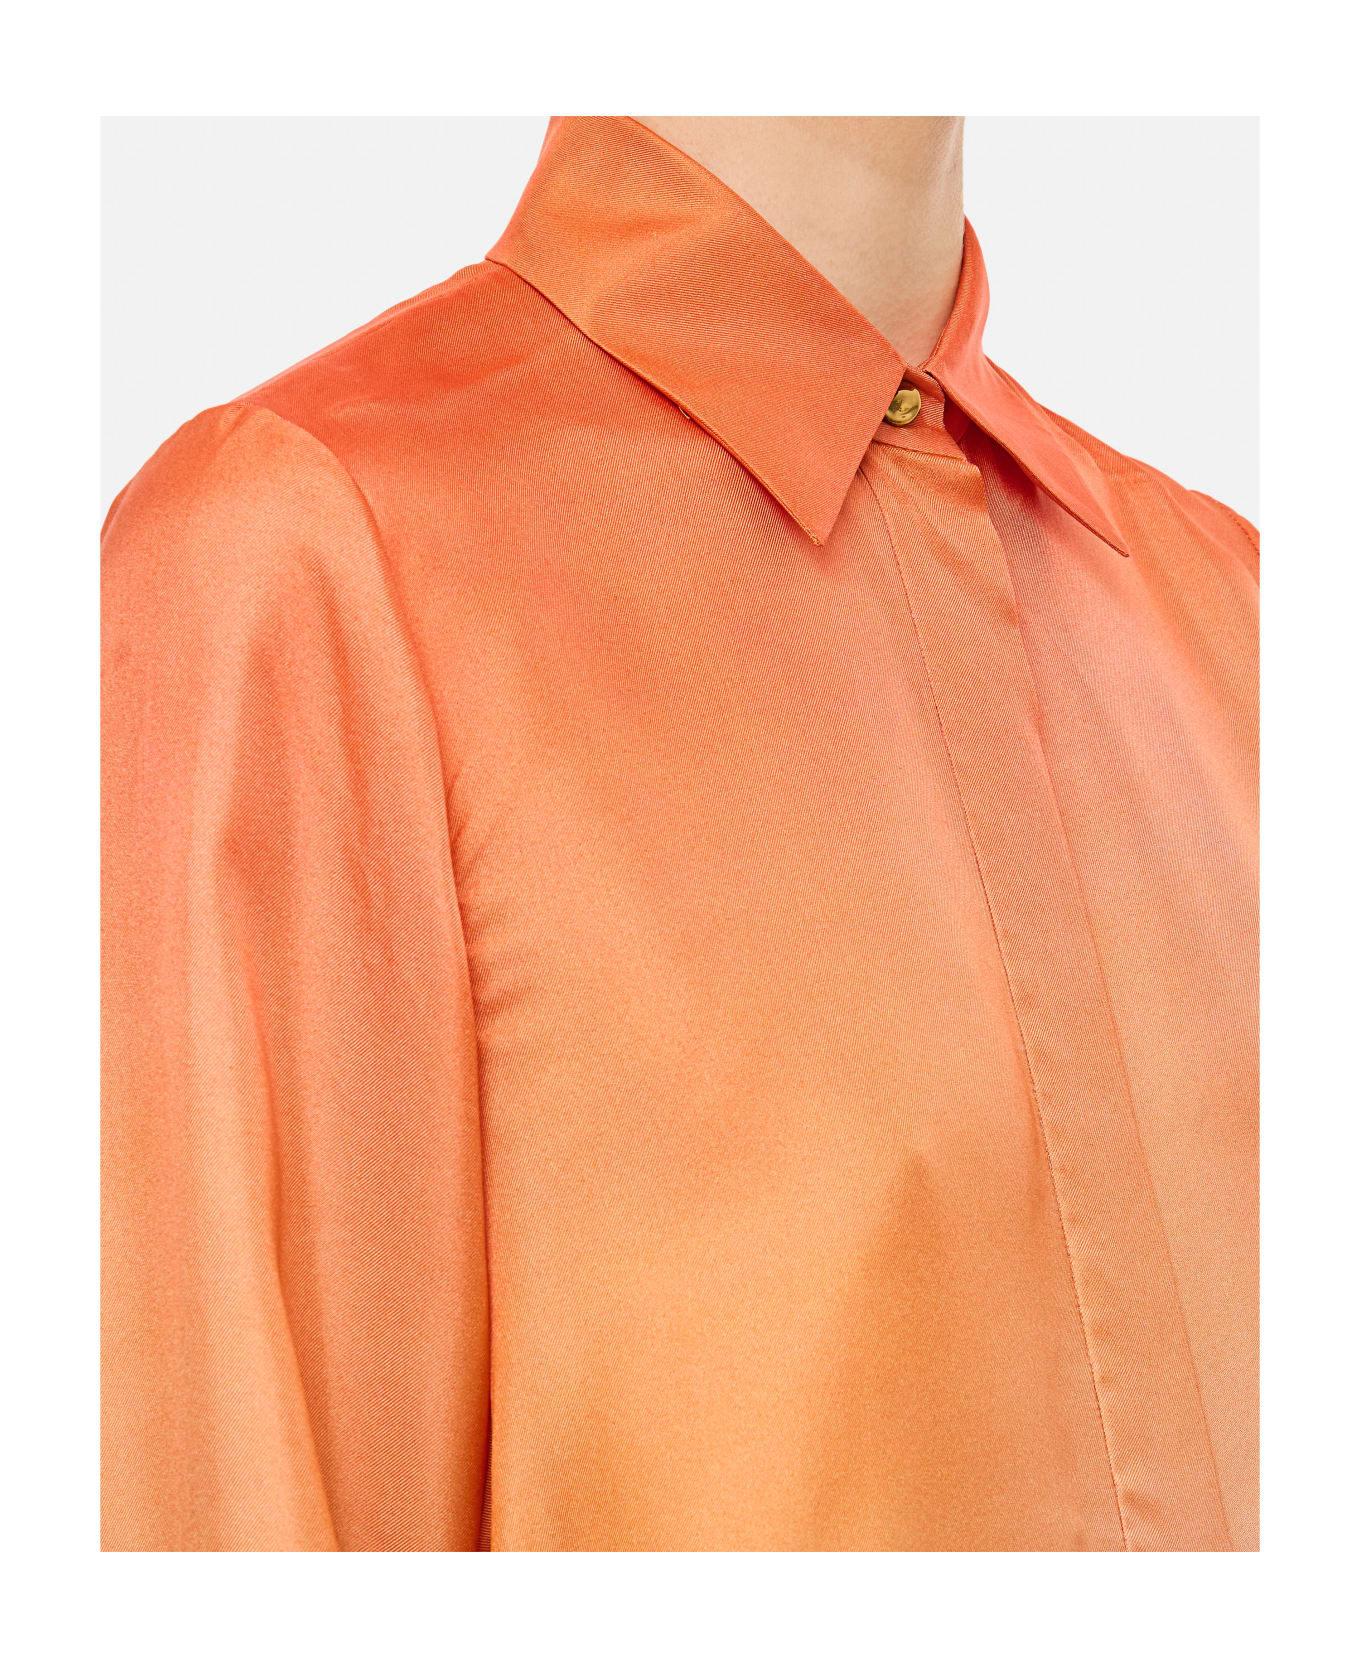 Zimmermann Tranquillity Scarf Shirt - Orange